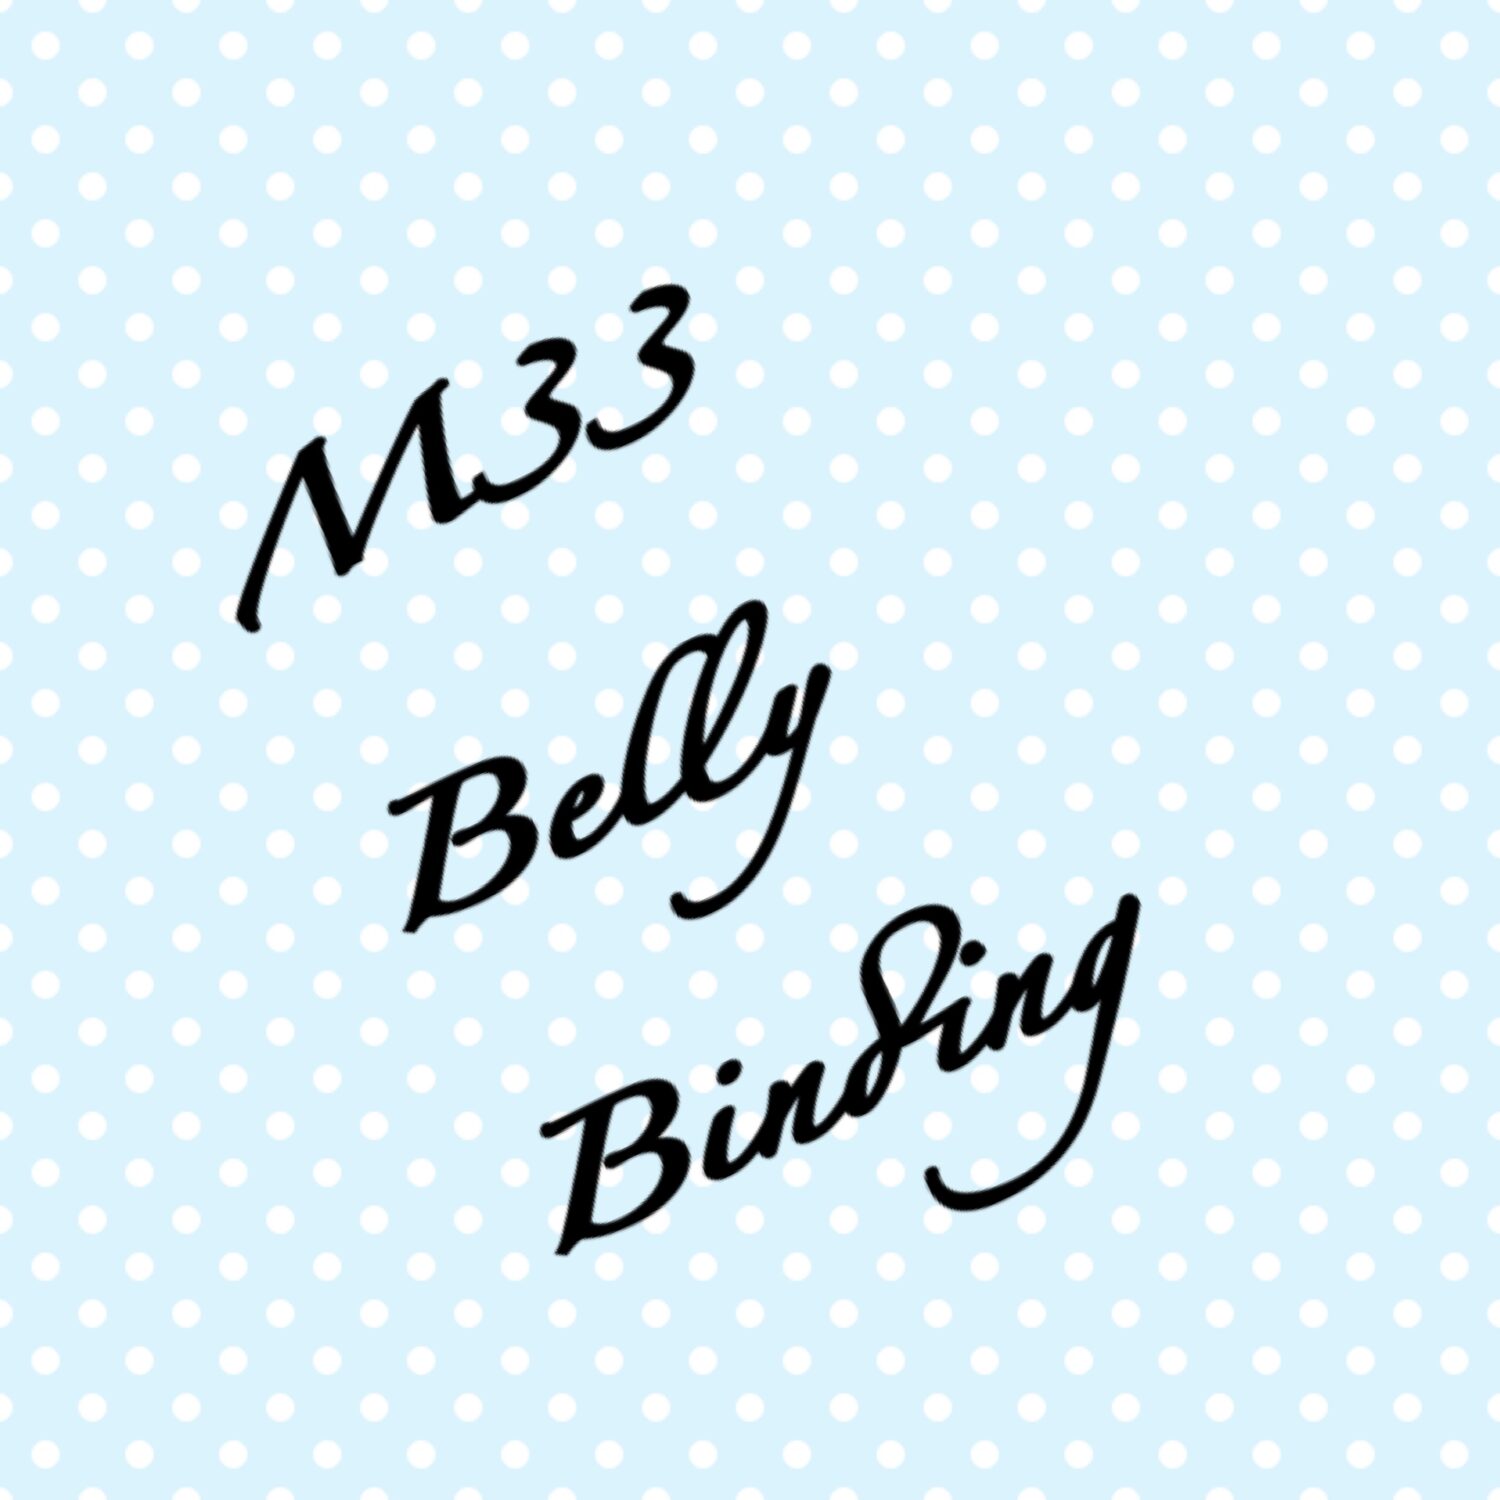 英國曼城產後腹部按摩 M33 Belly Binding Logo